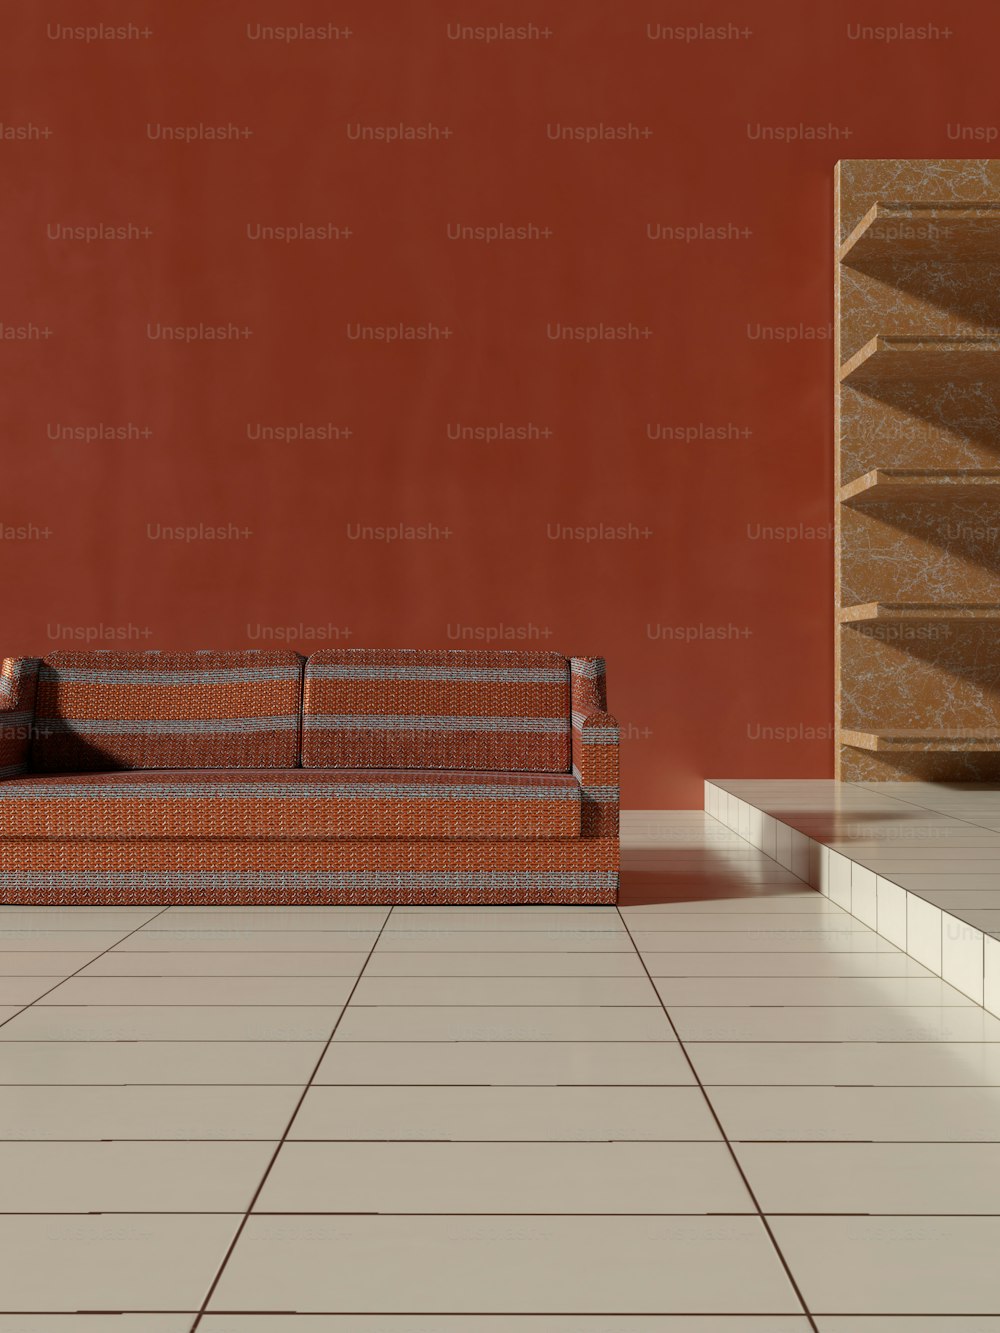 흰색 타일 바닥 위에 앉아 있는 갈색 소파